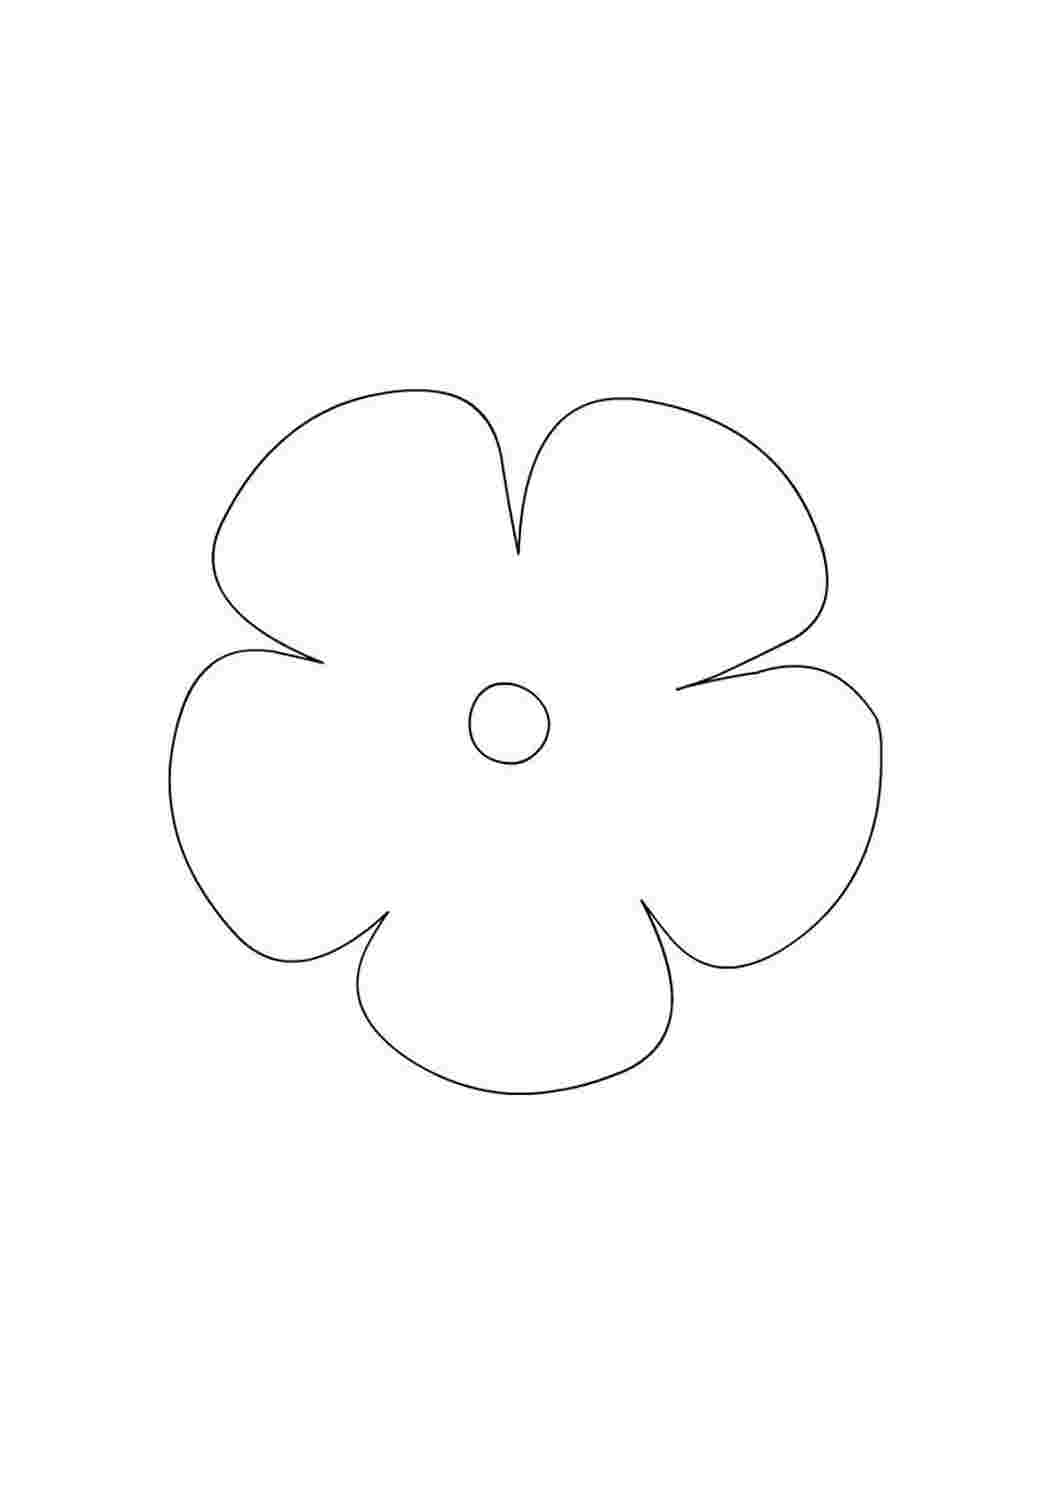 Раскраски Контур цветка для поделок и аппликаций Контур цветка для поделок и аппликаций  Раскраска цветок